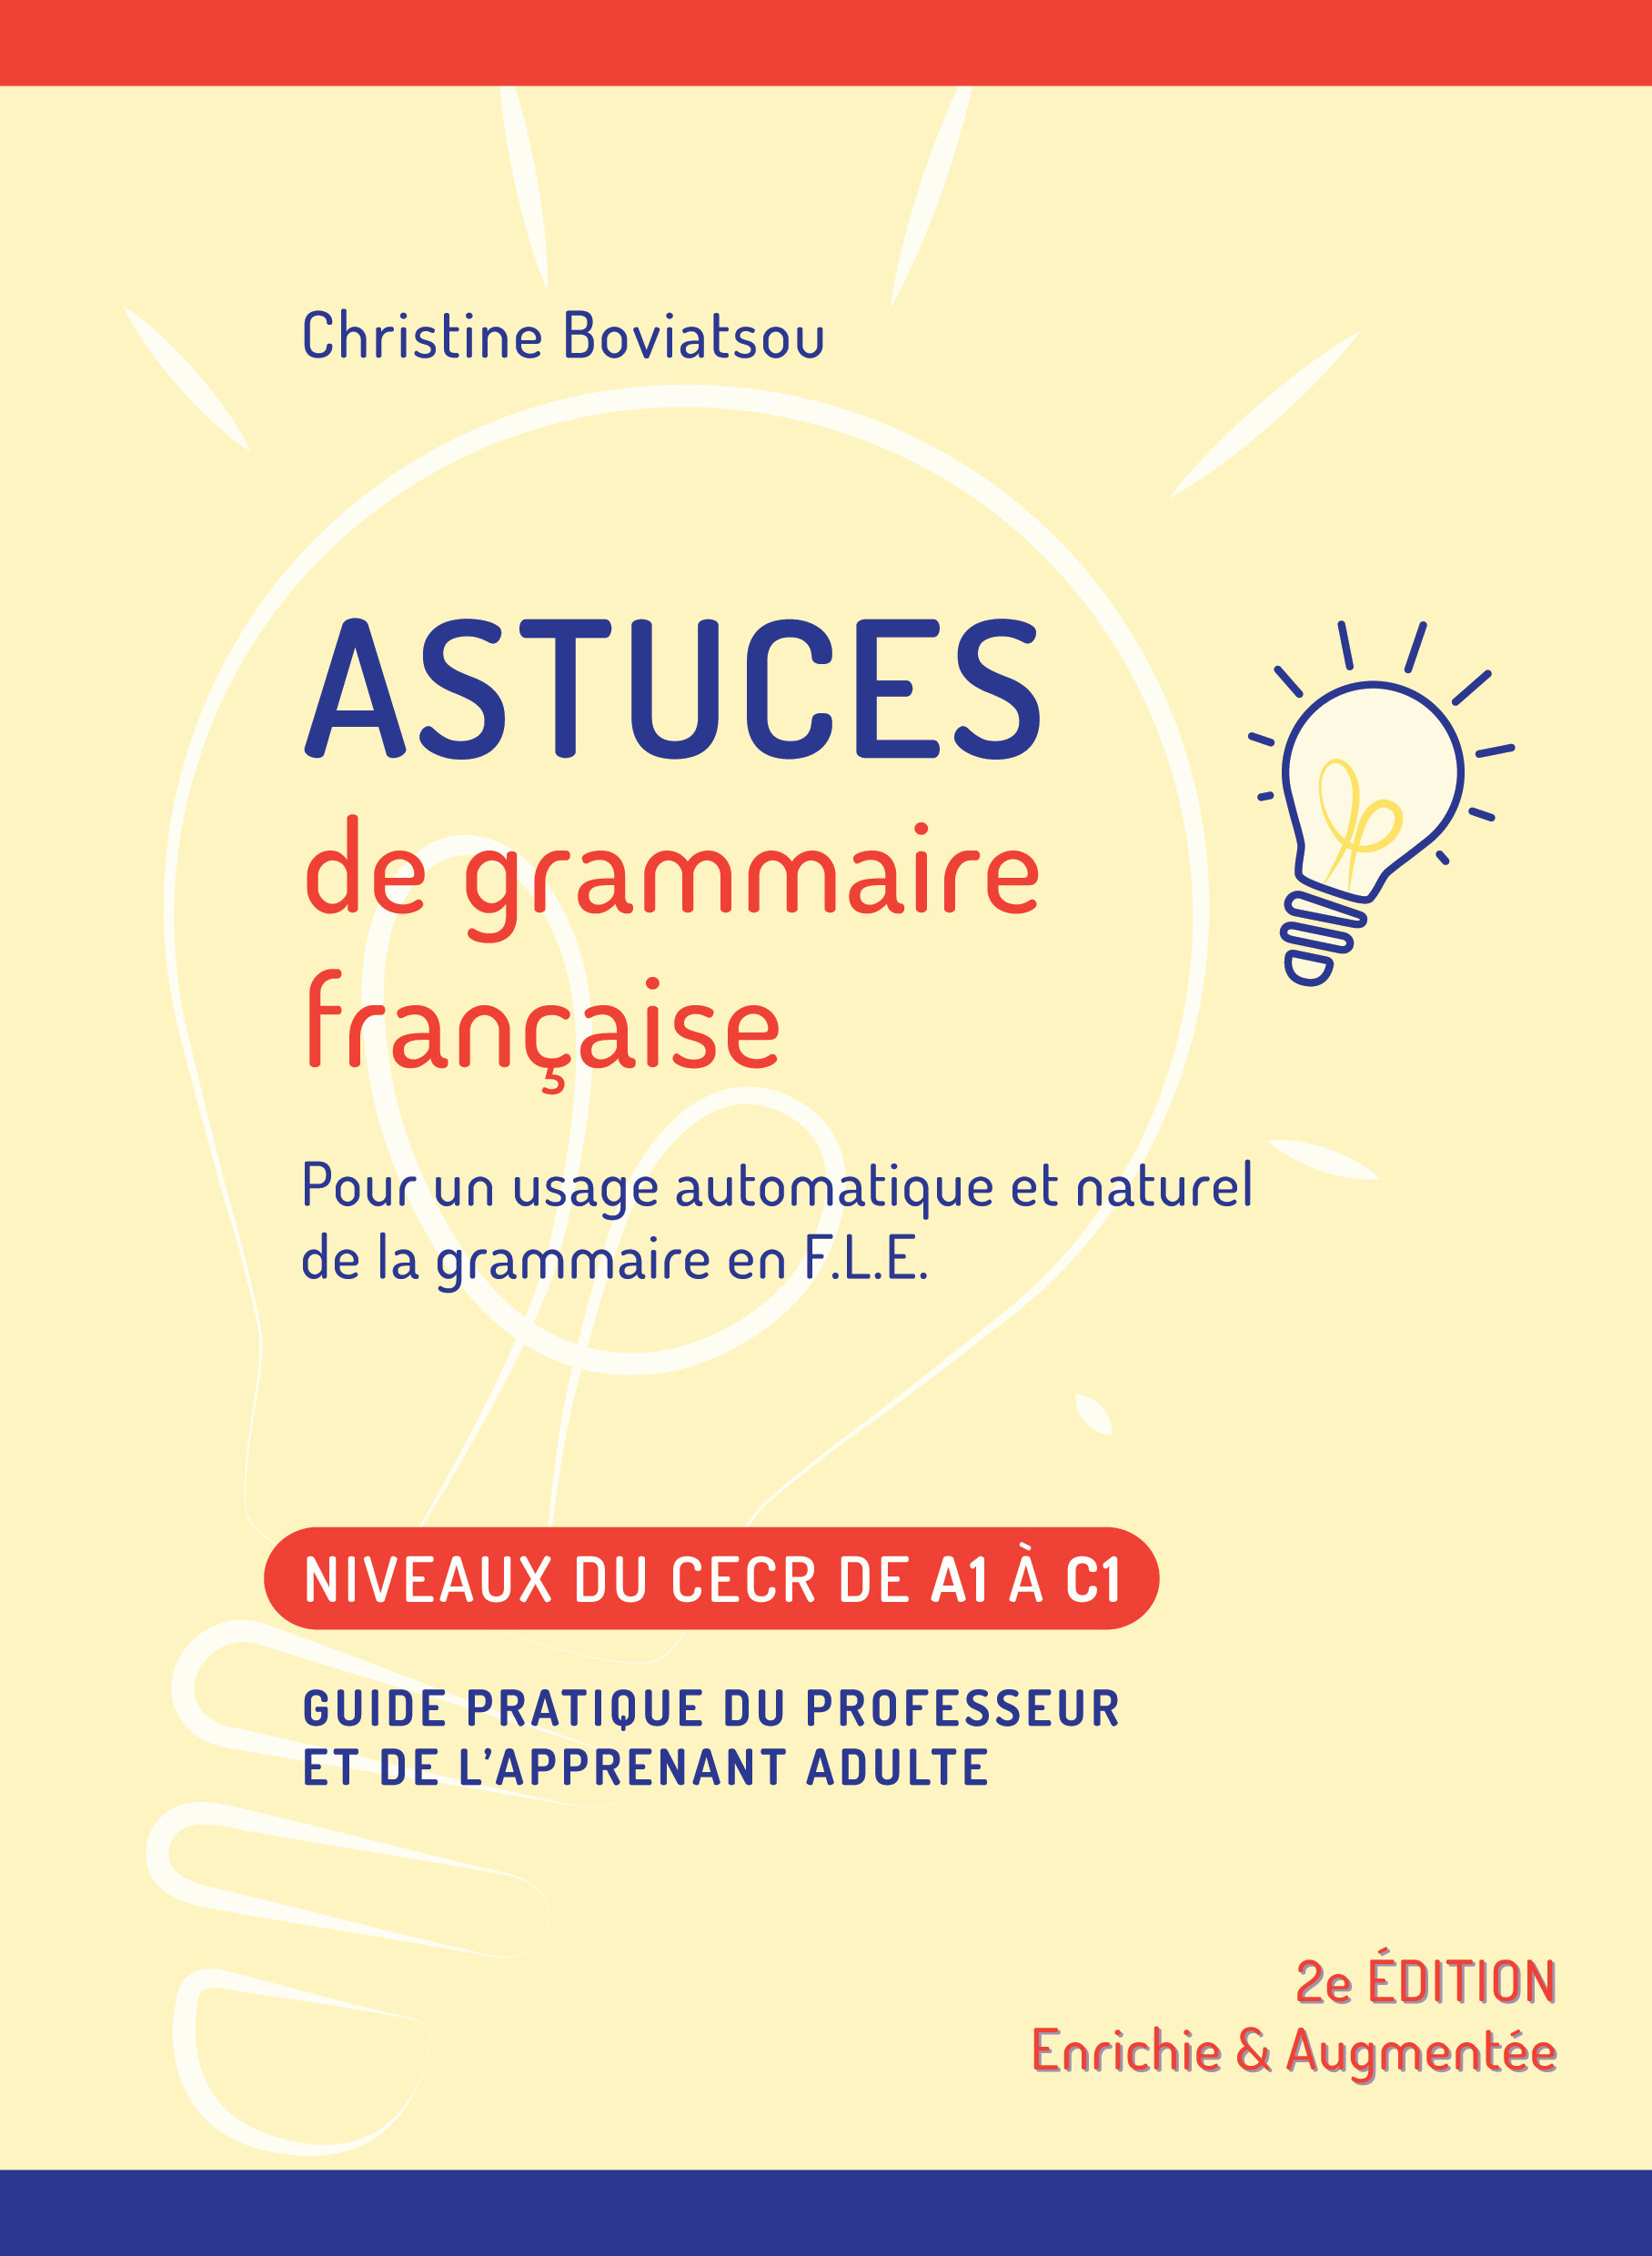 Astuces de grammaire francaise